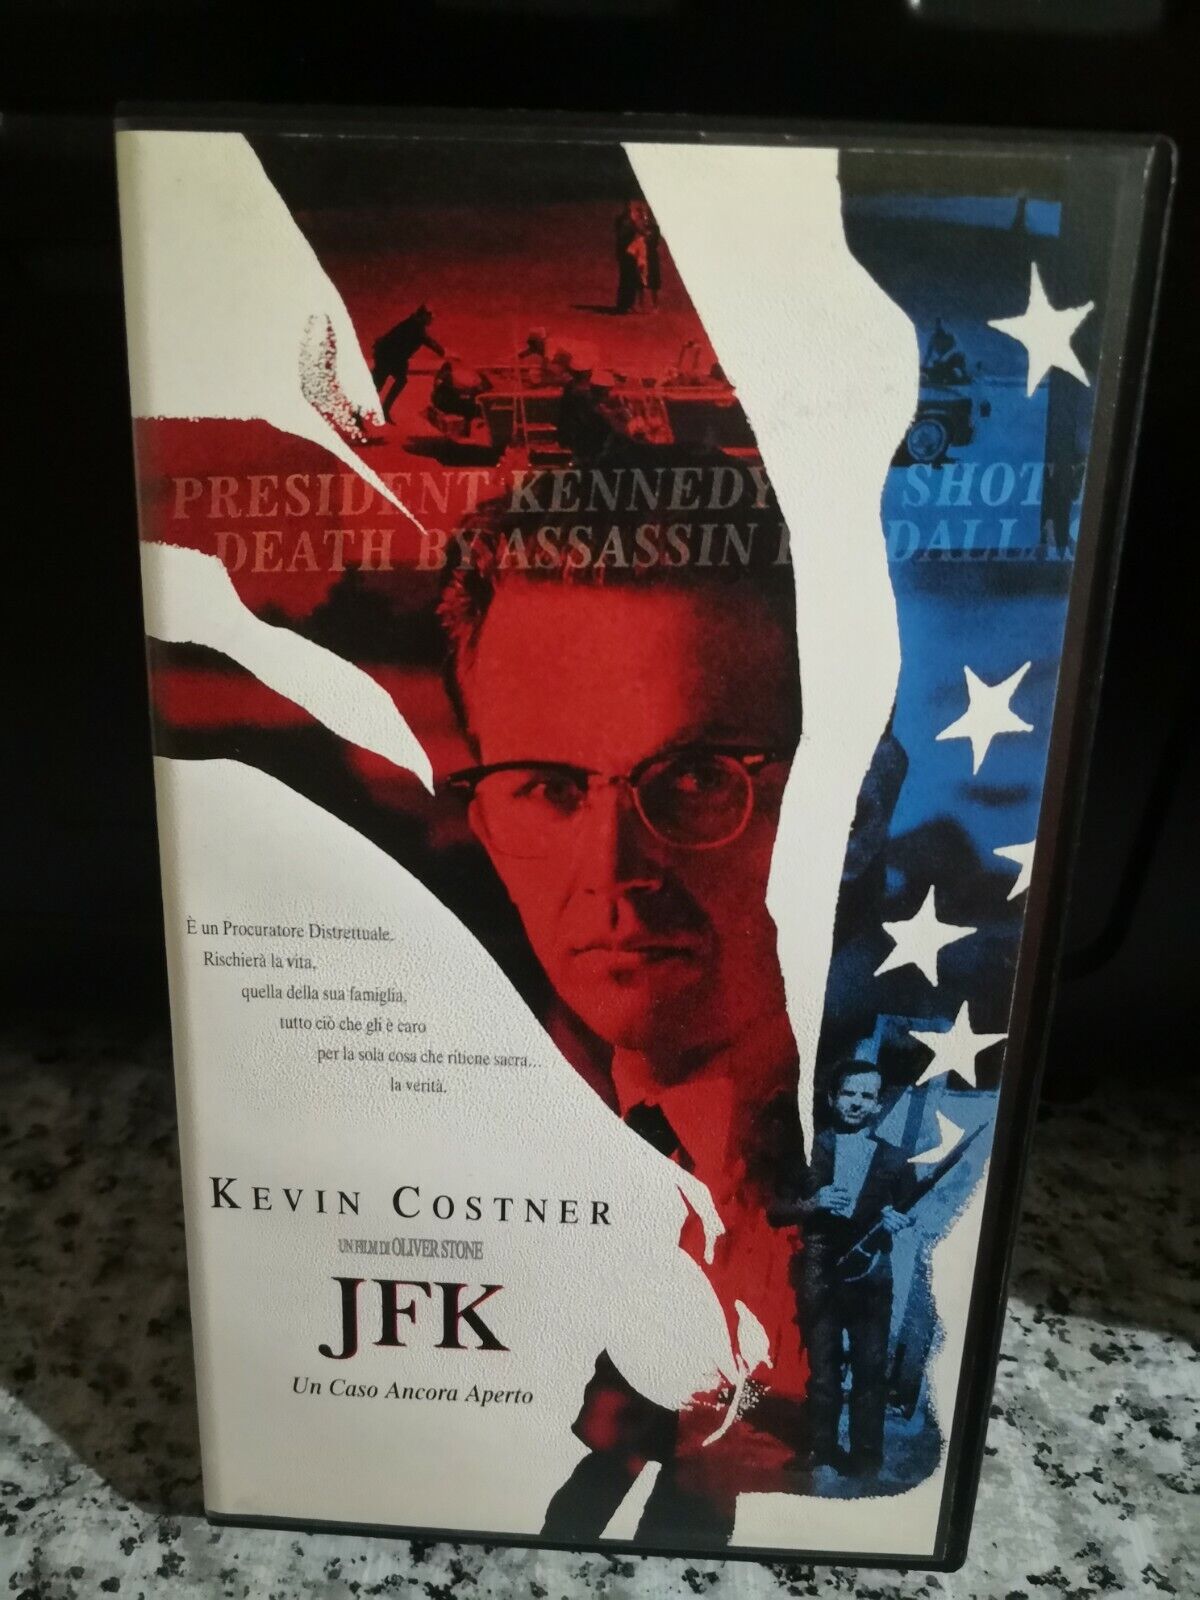 JFK kevin costner oliver stone - vhs - 1999 - Univideo -F